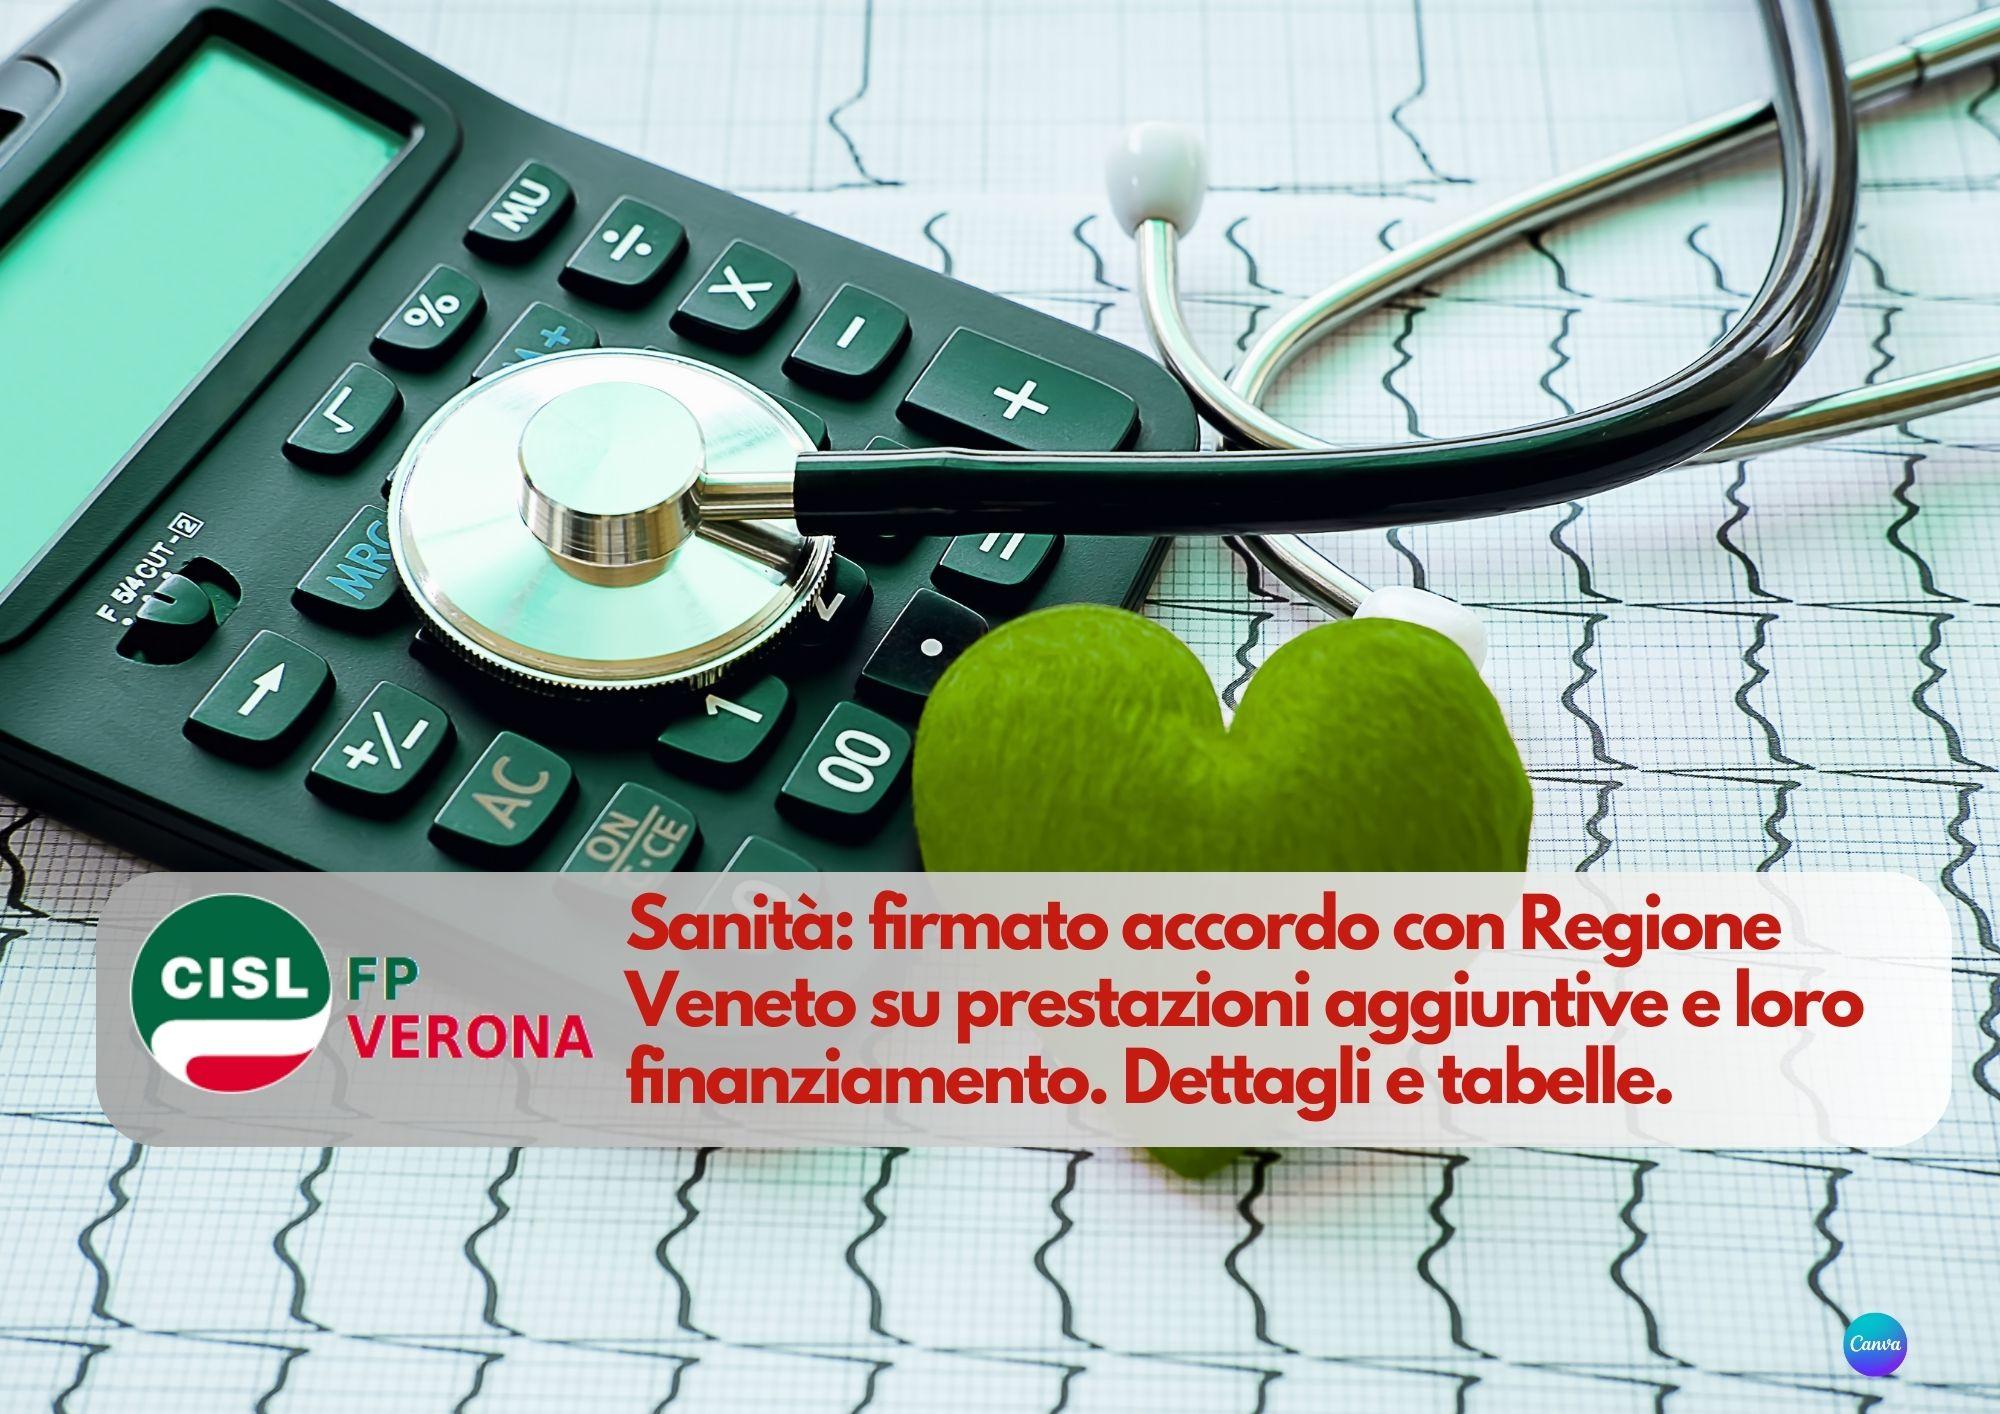 CISL FP Verona. Sanità: firmato accordo Regione Veneto prestazioni aggiuntive e loro finanziamento